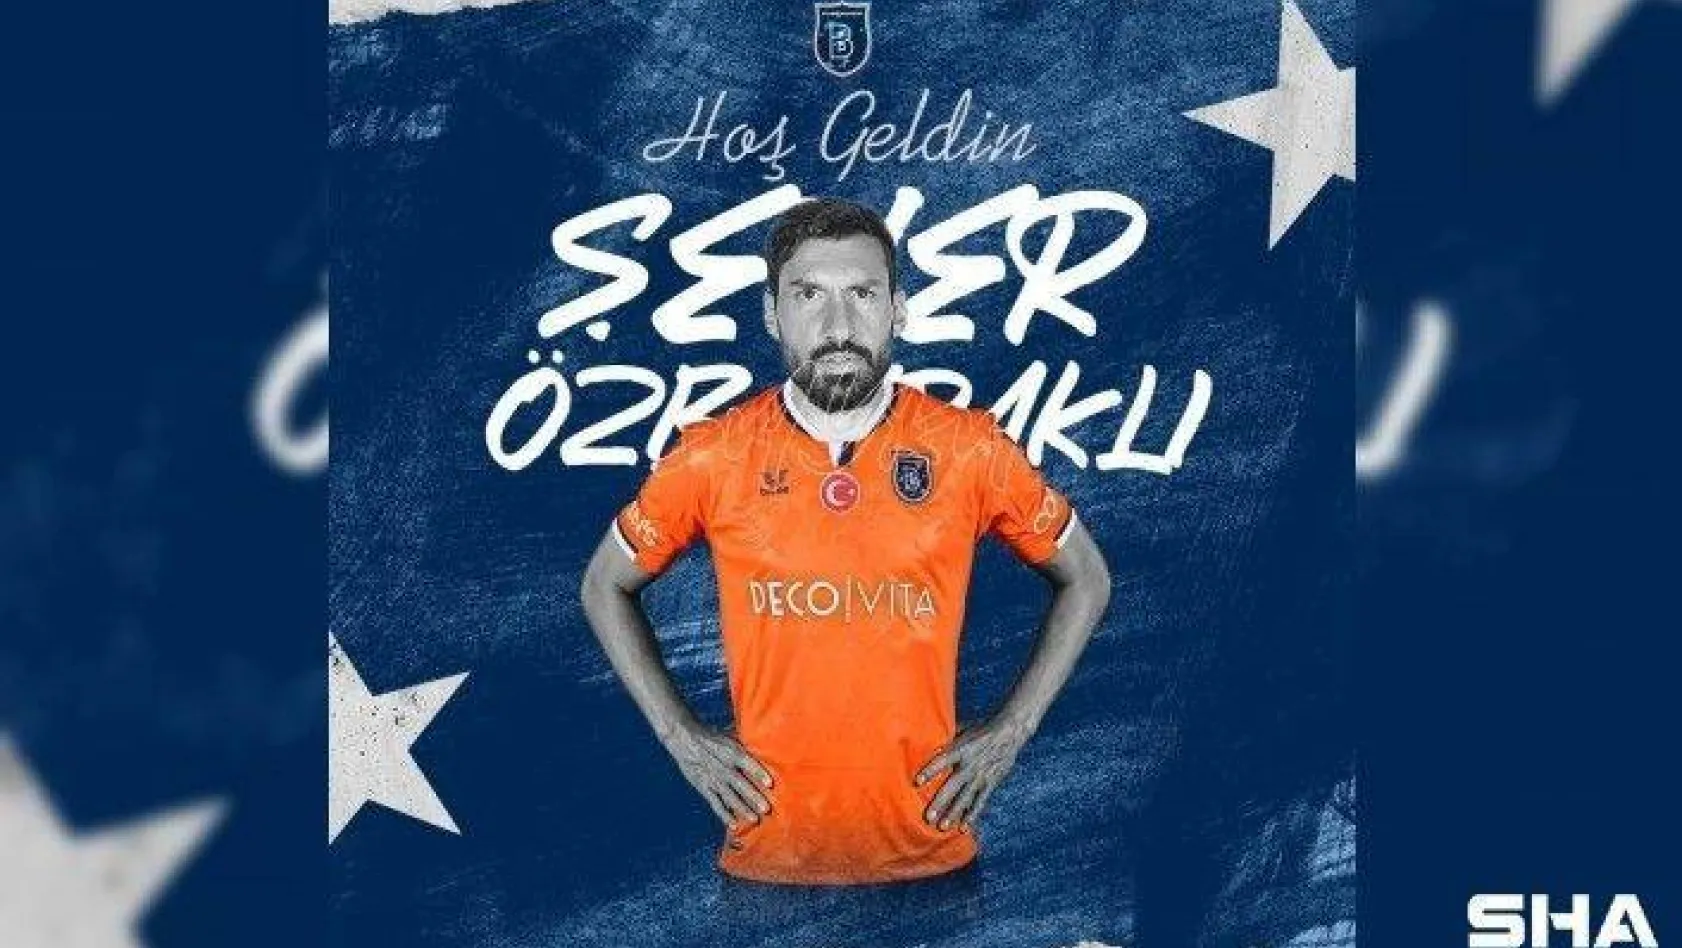 Medipol Başakşehir, Galatasaray'dan ayrılan Şener Özbayraklı'yı kadrosuna kattığını açıkladı.